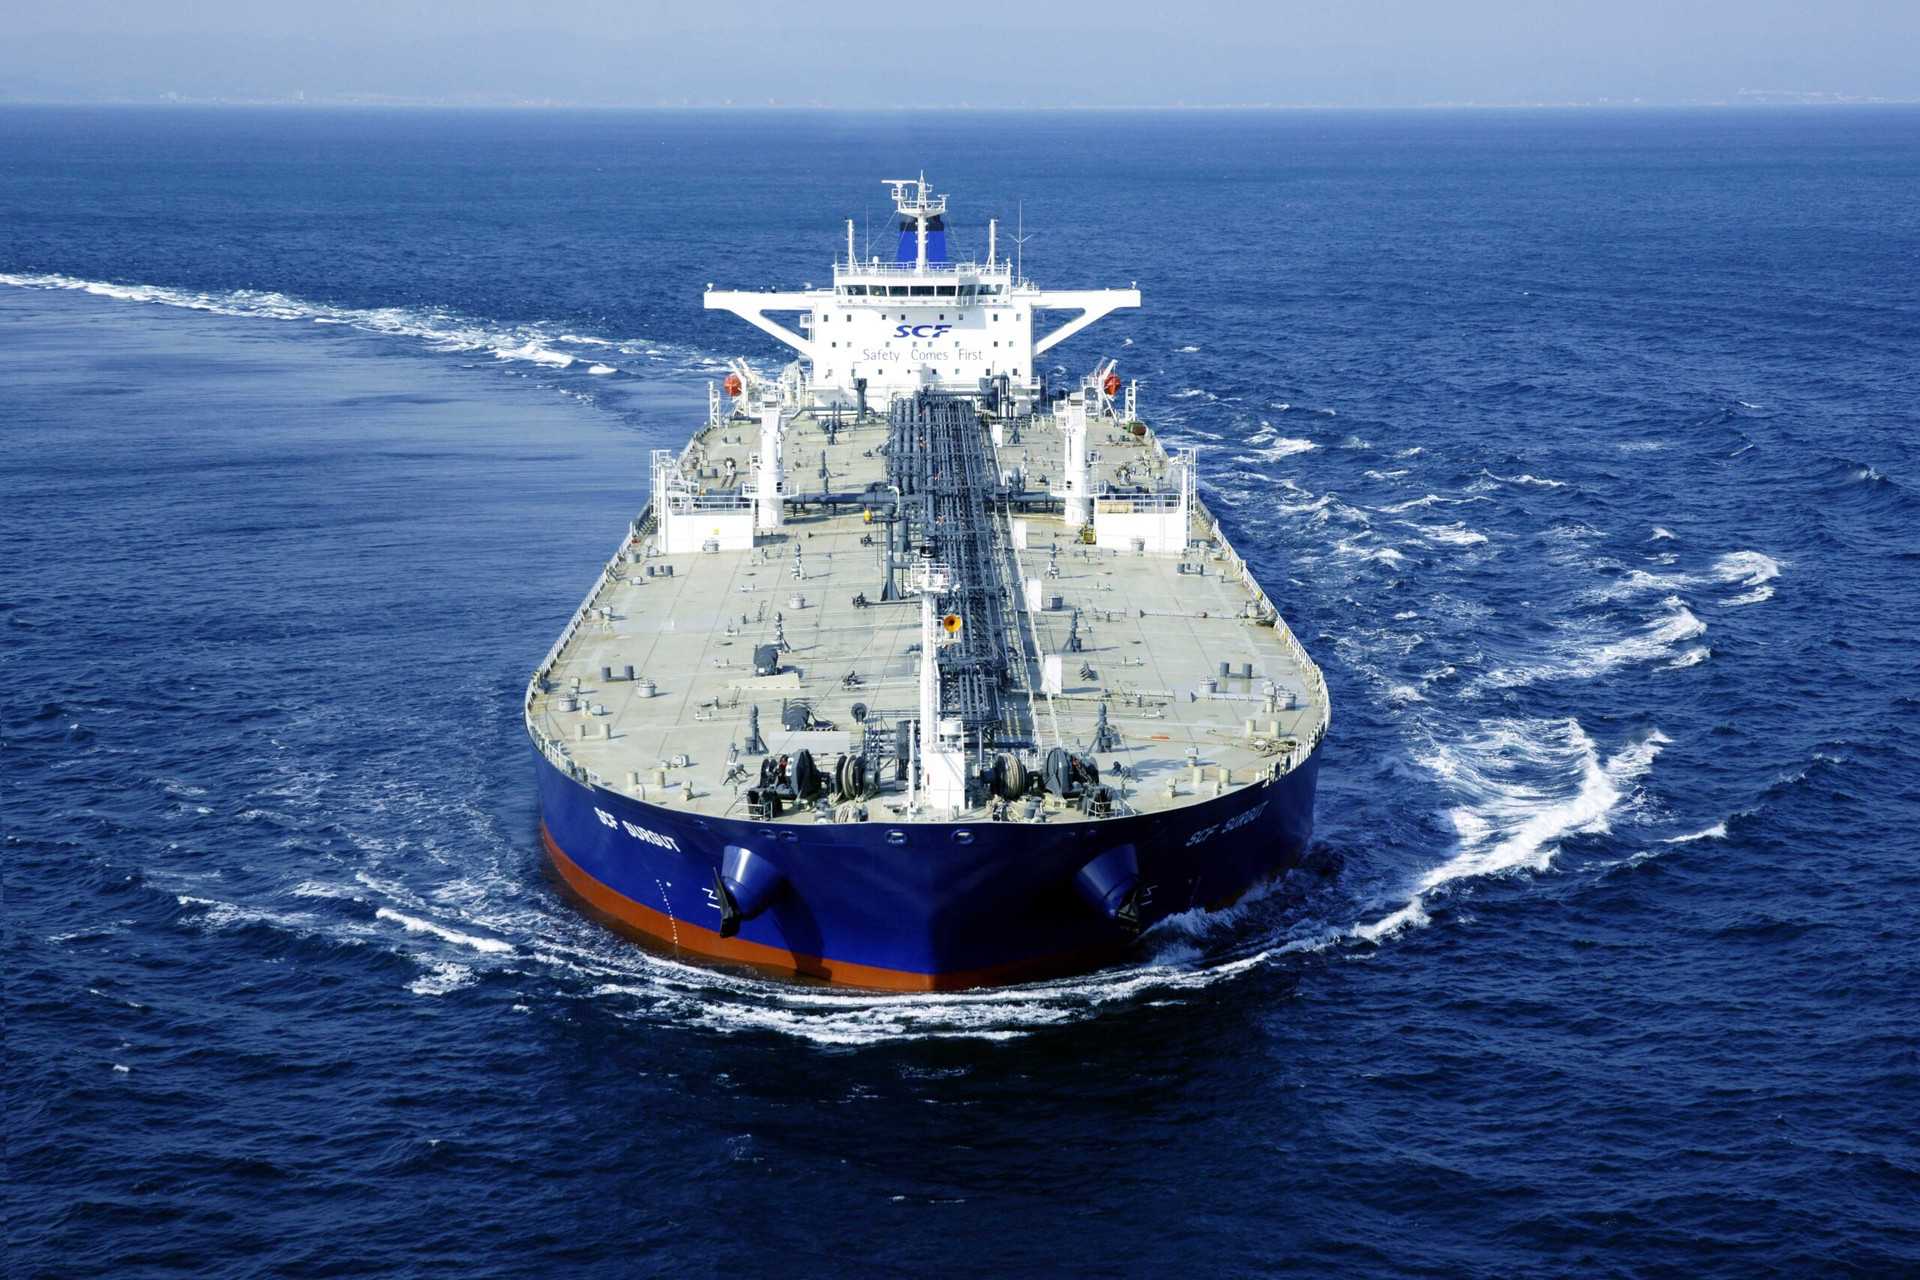 suezmax-crude-oil-tanker-scf-surgut-scaled.jpg